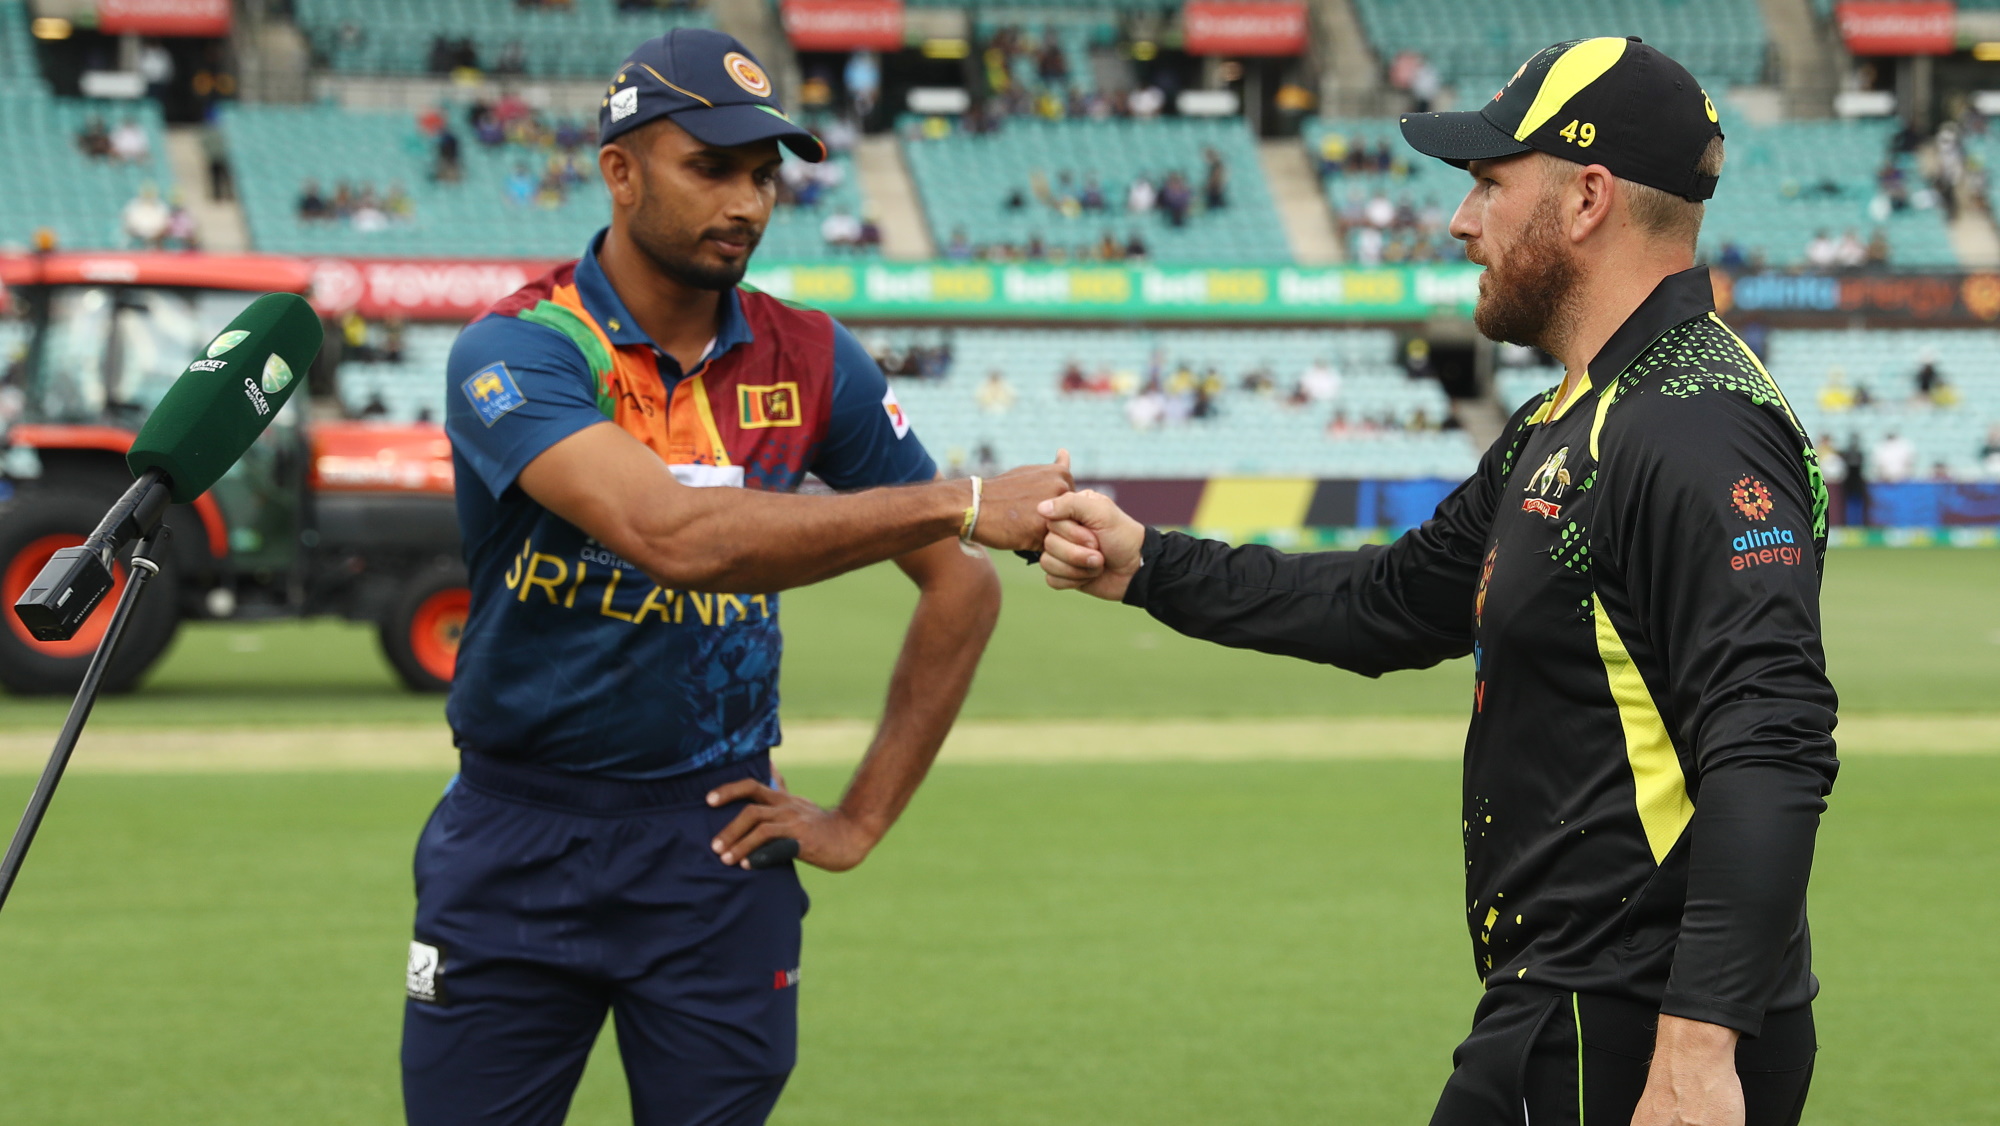 श्रीलंका क्रिकेट ने ऑस्ट्रेलिया के खिलाफ सीरीज के लिए चला ये दांव, इस दिग्गज को अपने साथ जोड़ा 1